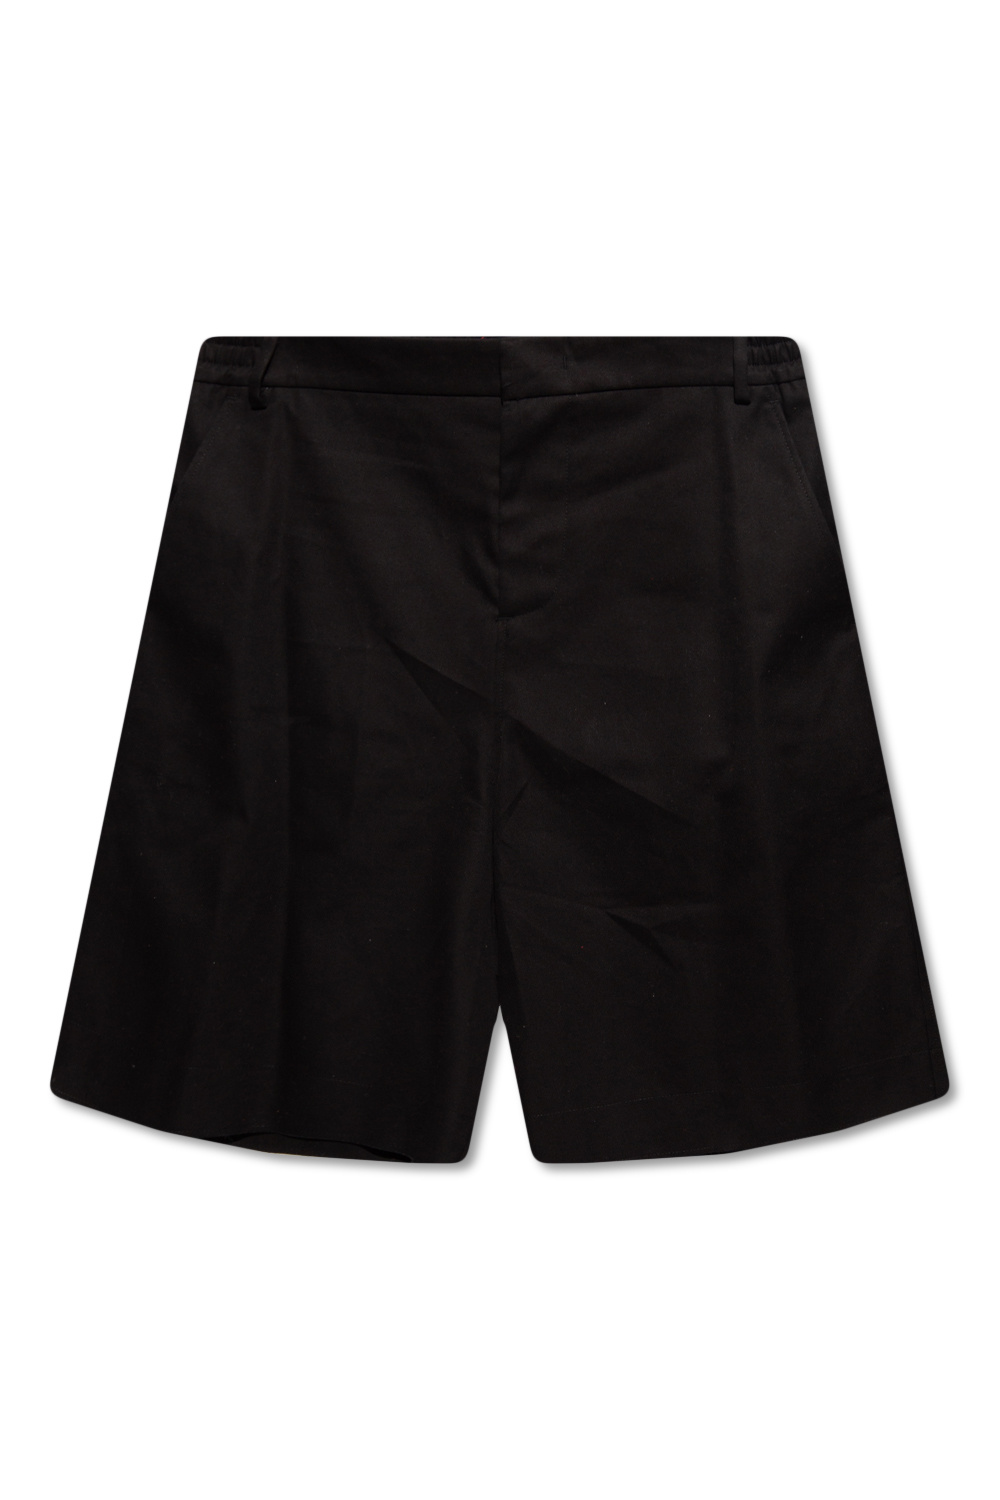 GenesinlifeShops Canada - Black Oversize shorts leggings 424